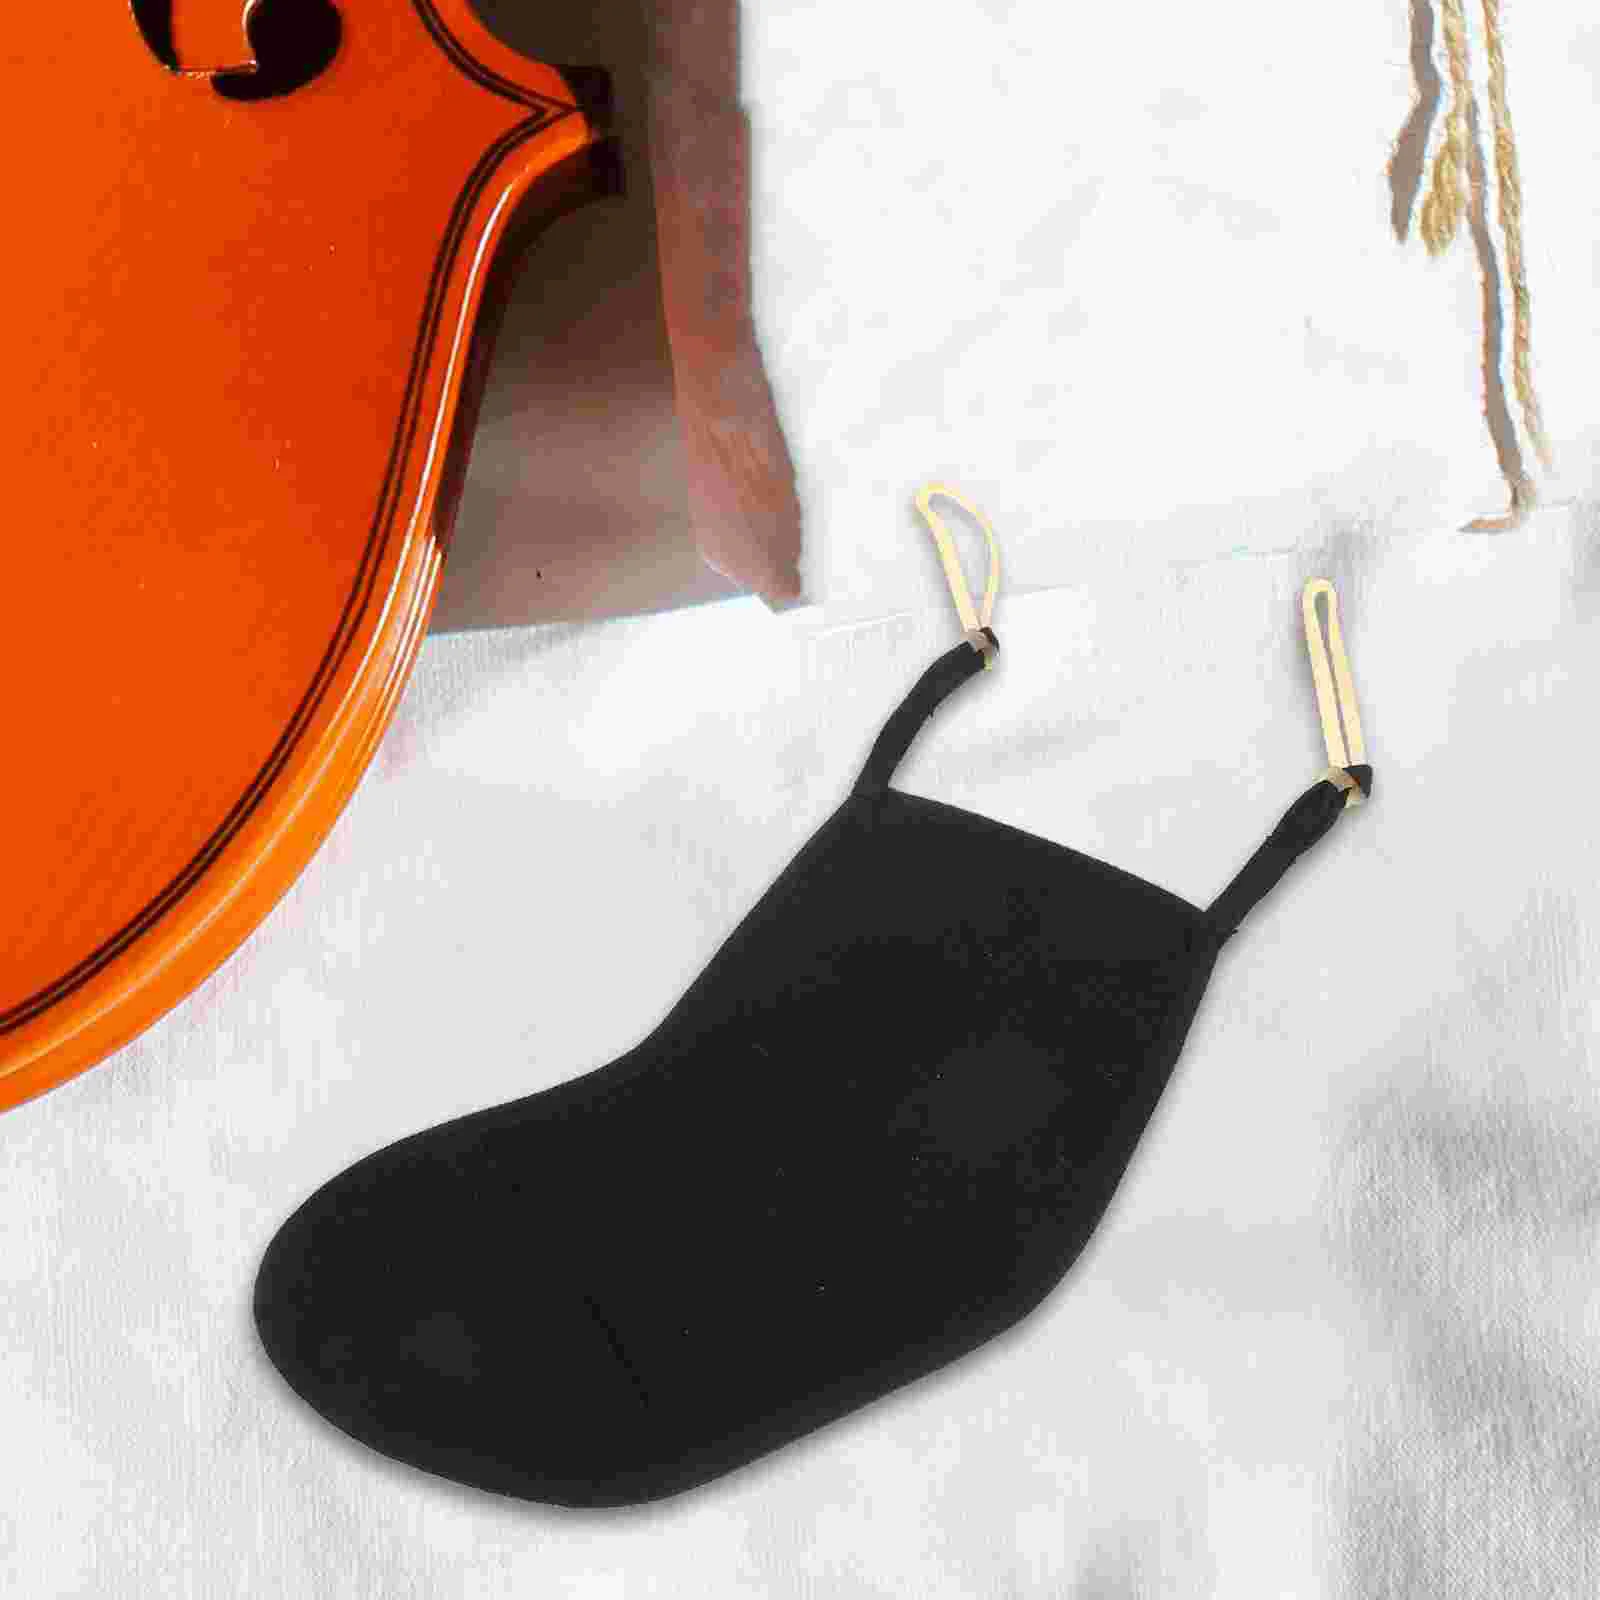 Сменный упор для подбородка, практичная подставка для подбородка для скрипки, аксессуар для игры на скрипке